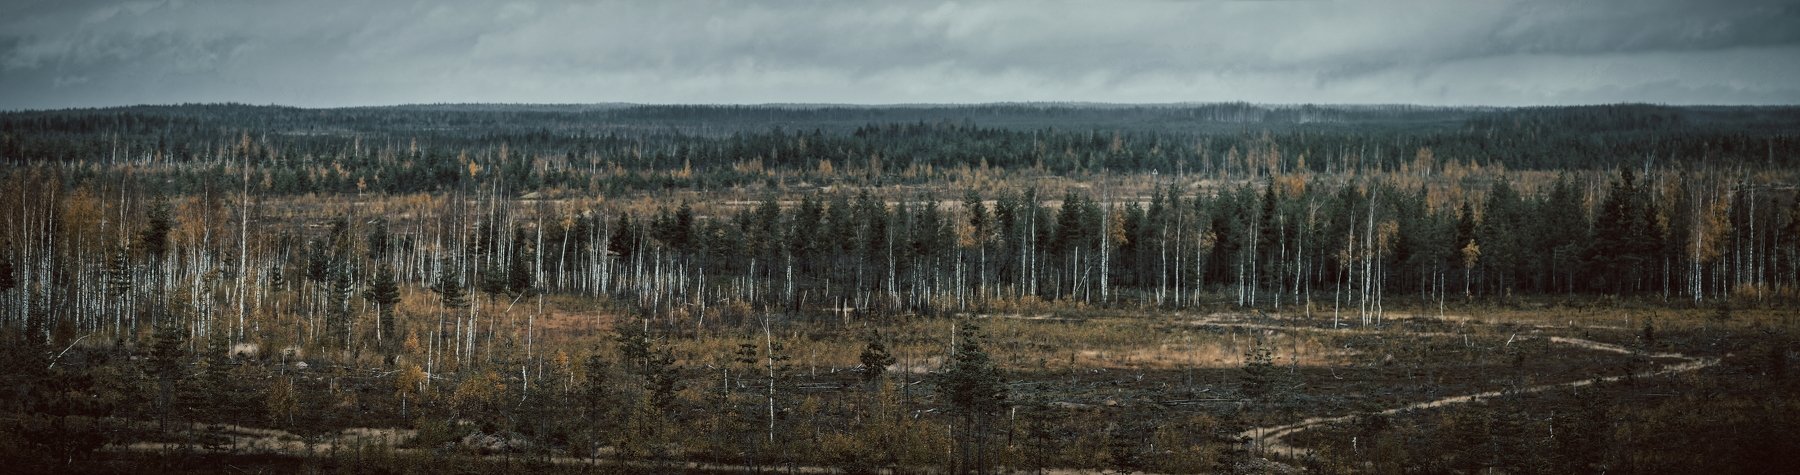 россия, деревья, лес, осень, поле, пустошь, Vladimir Kedrov